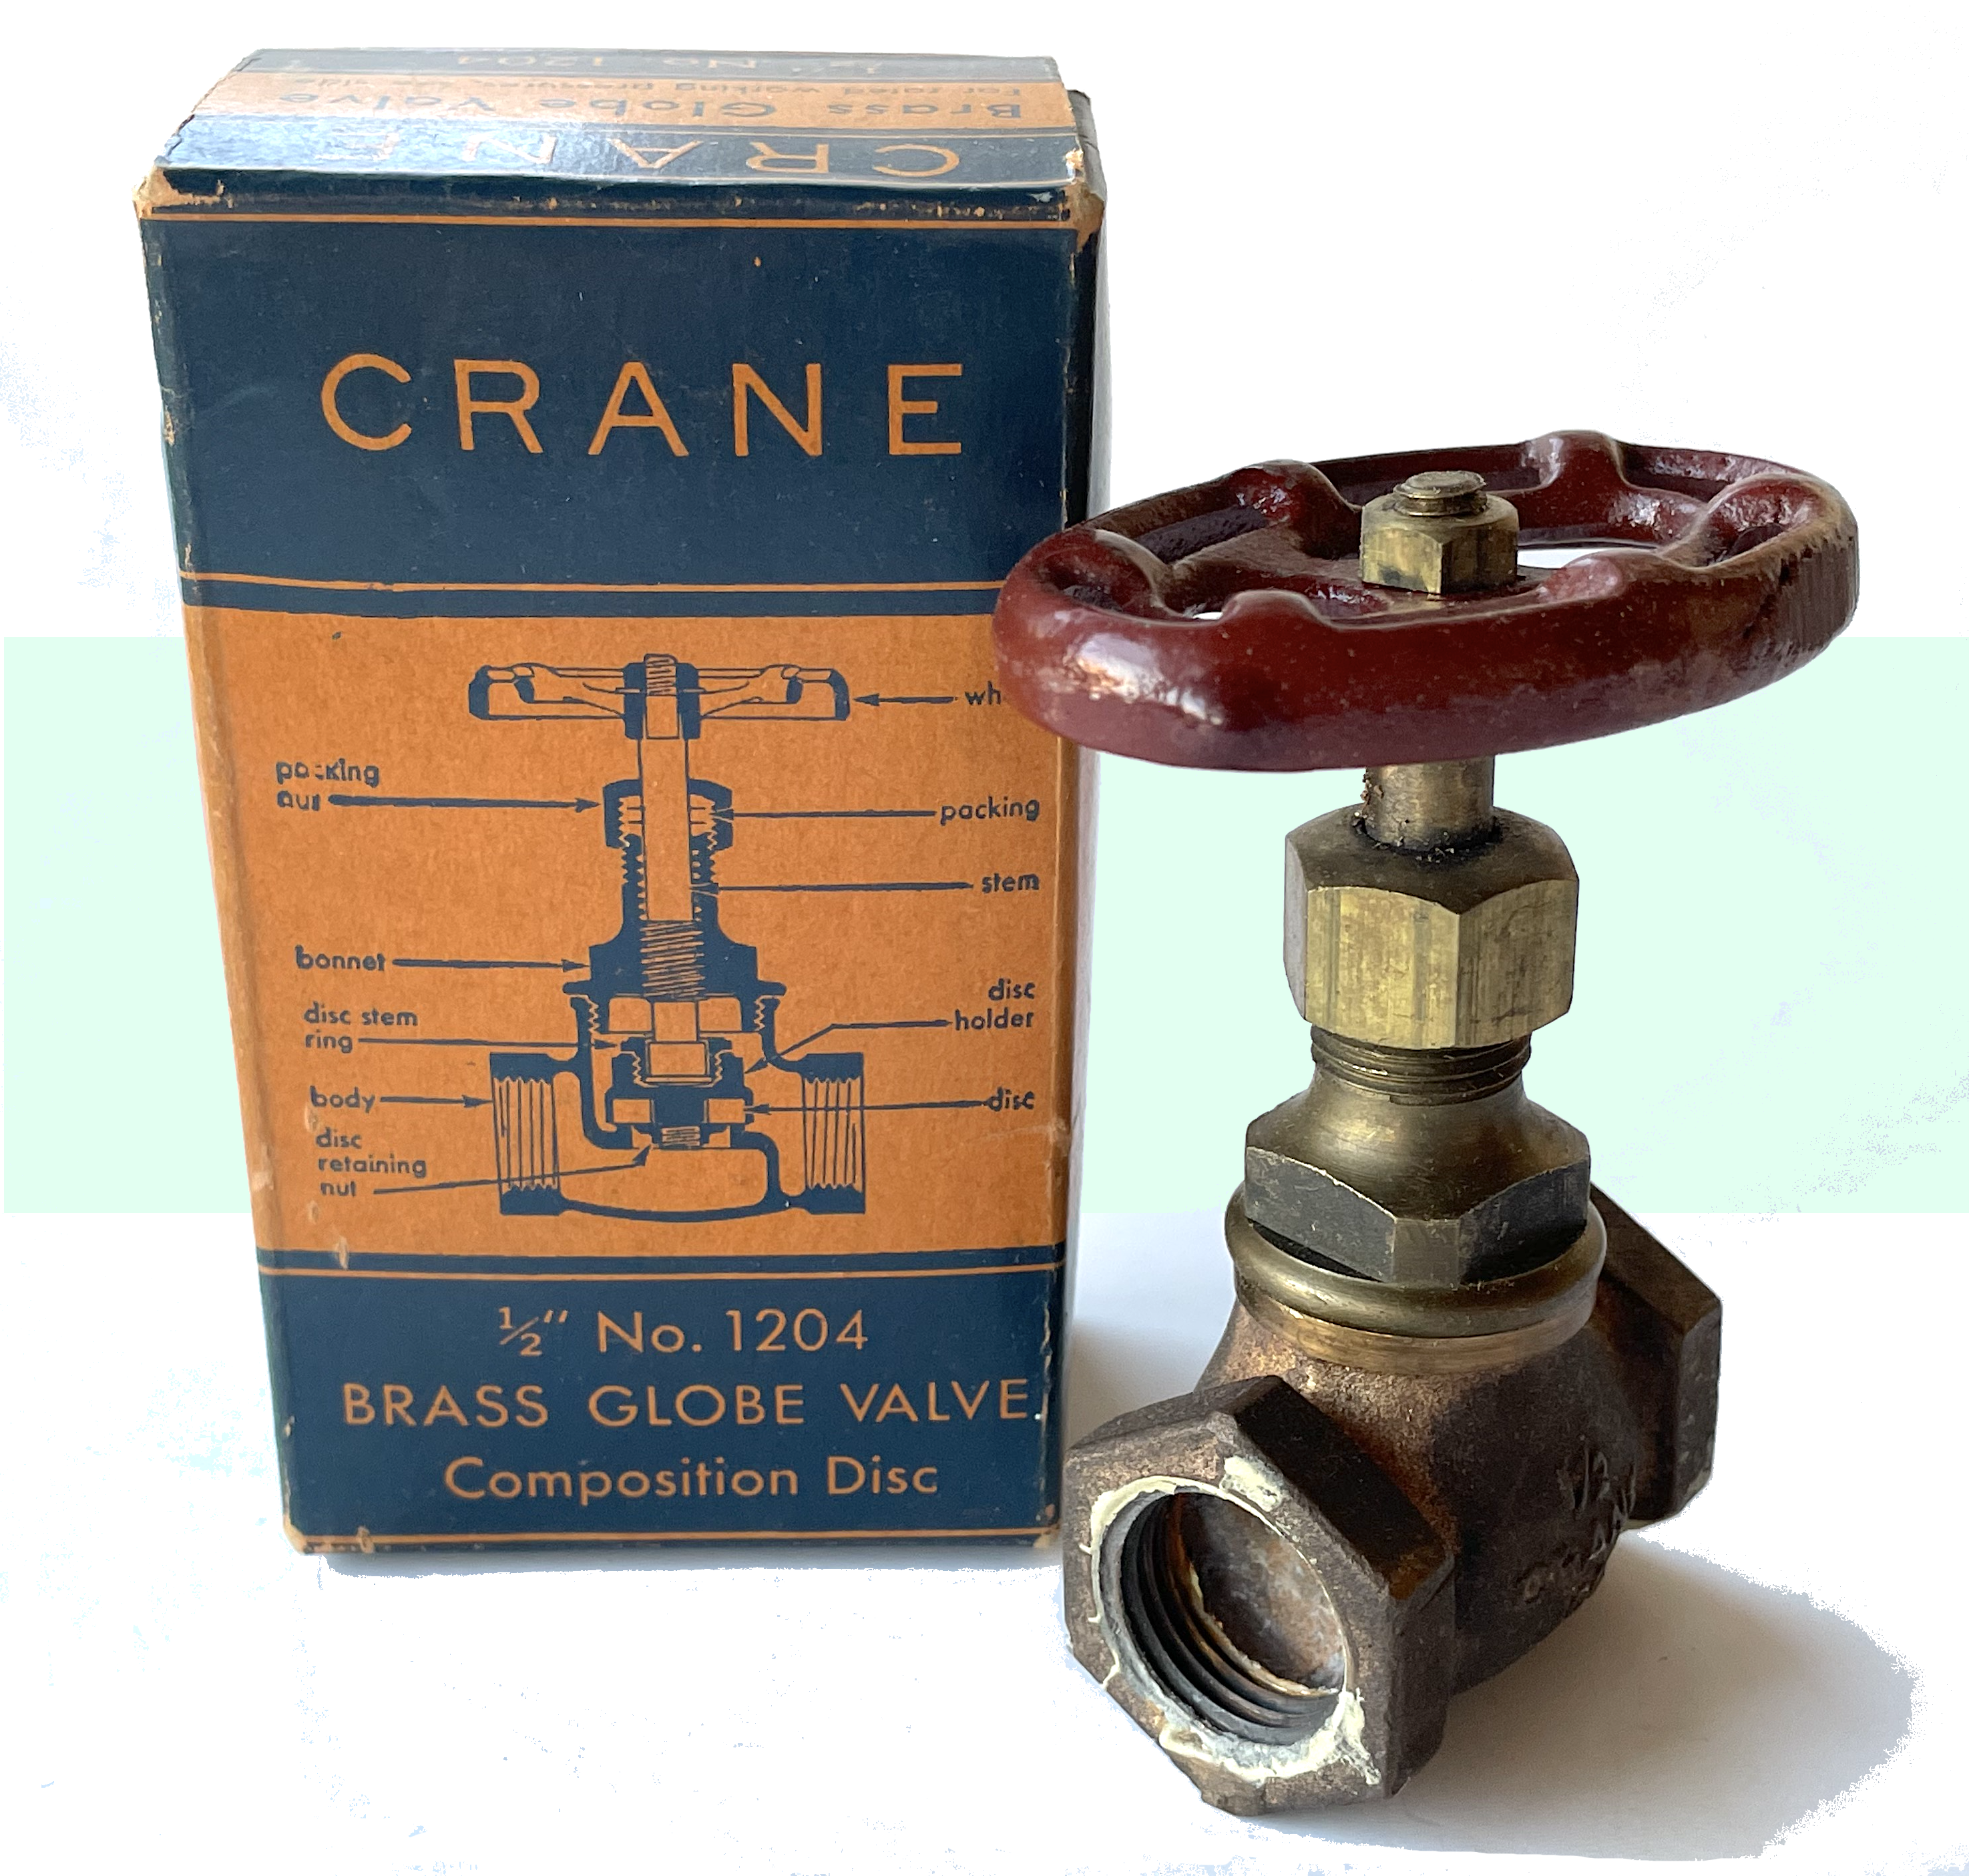 Crane Company history